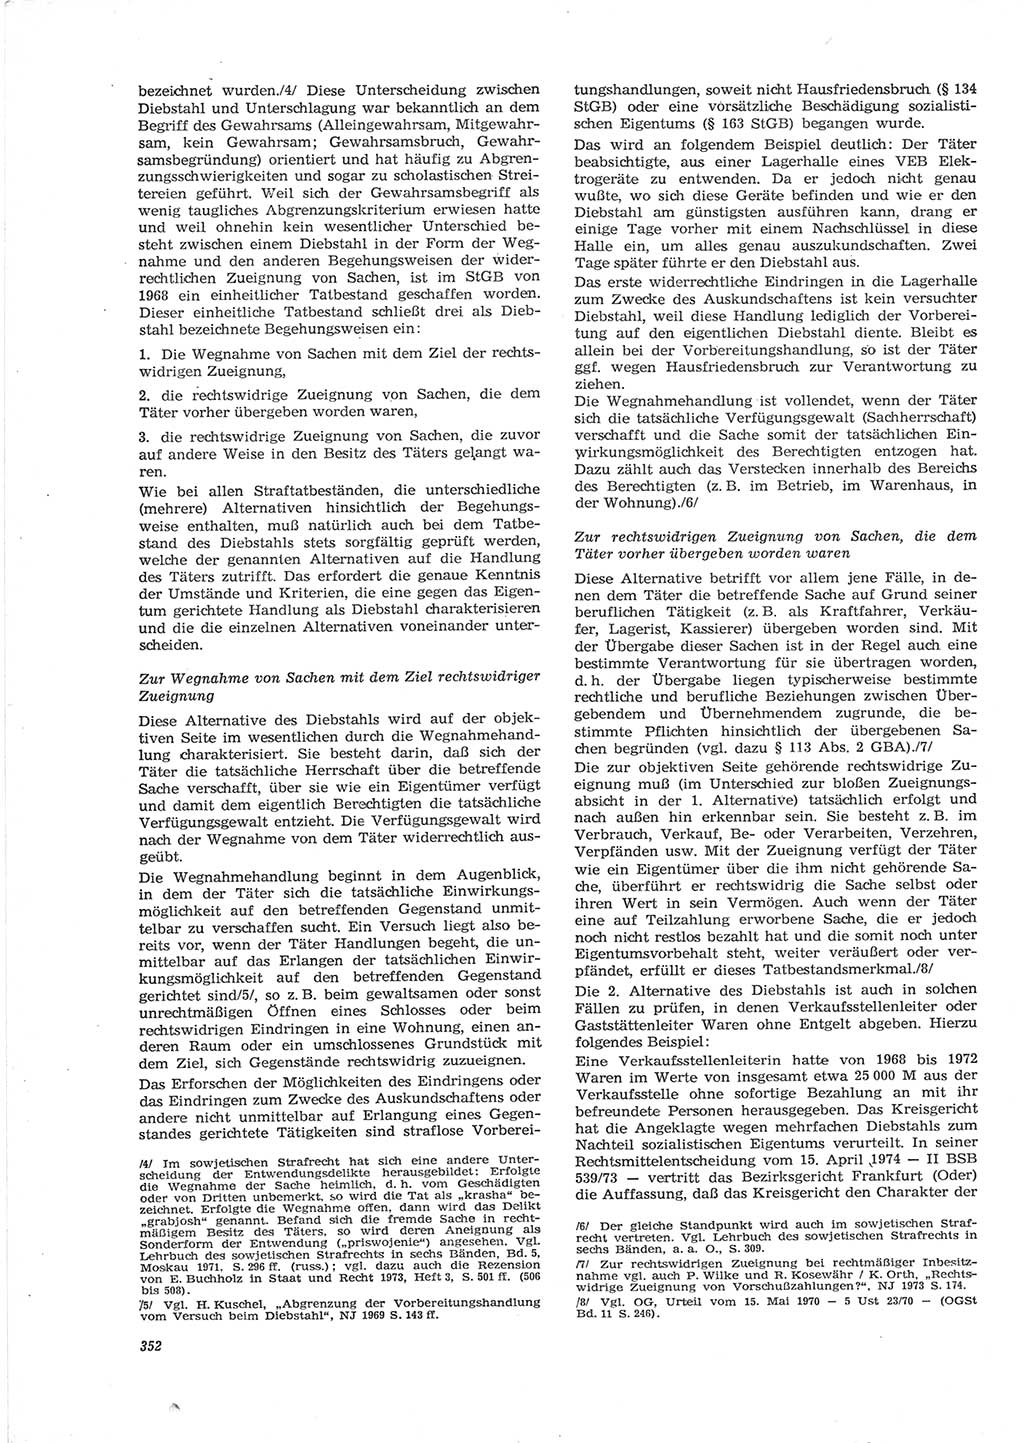 Neue Justiz (NJ), Zeitschrift für Recht und Rechtswissenschaft [Deutsche Demokratische Republik (DDR)], 28. Jahrgang 1974, Seite 352 (NJ DDR 1974, S. 352)